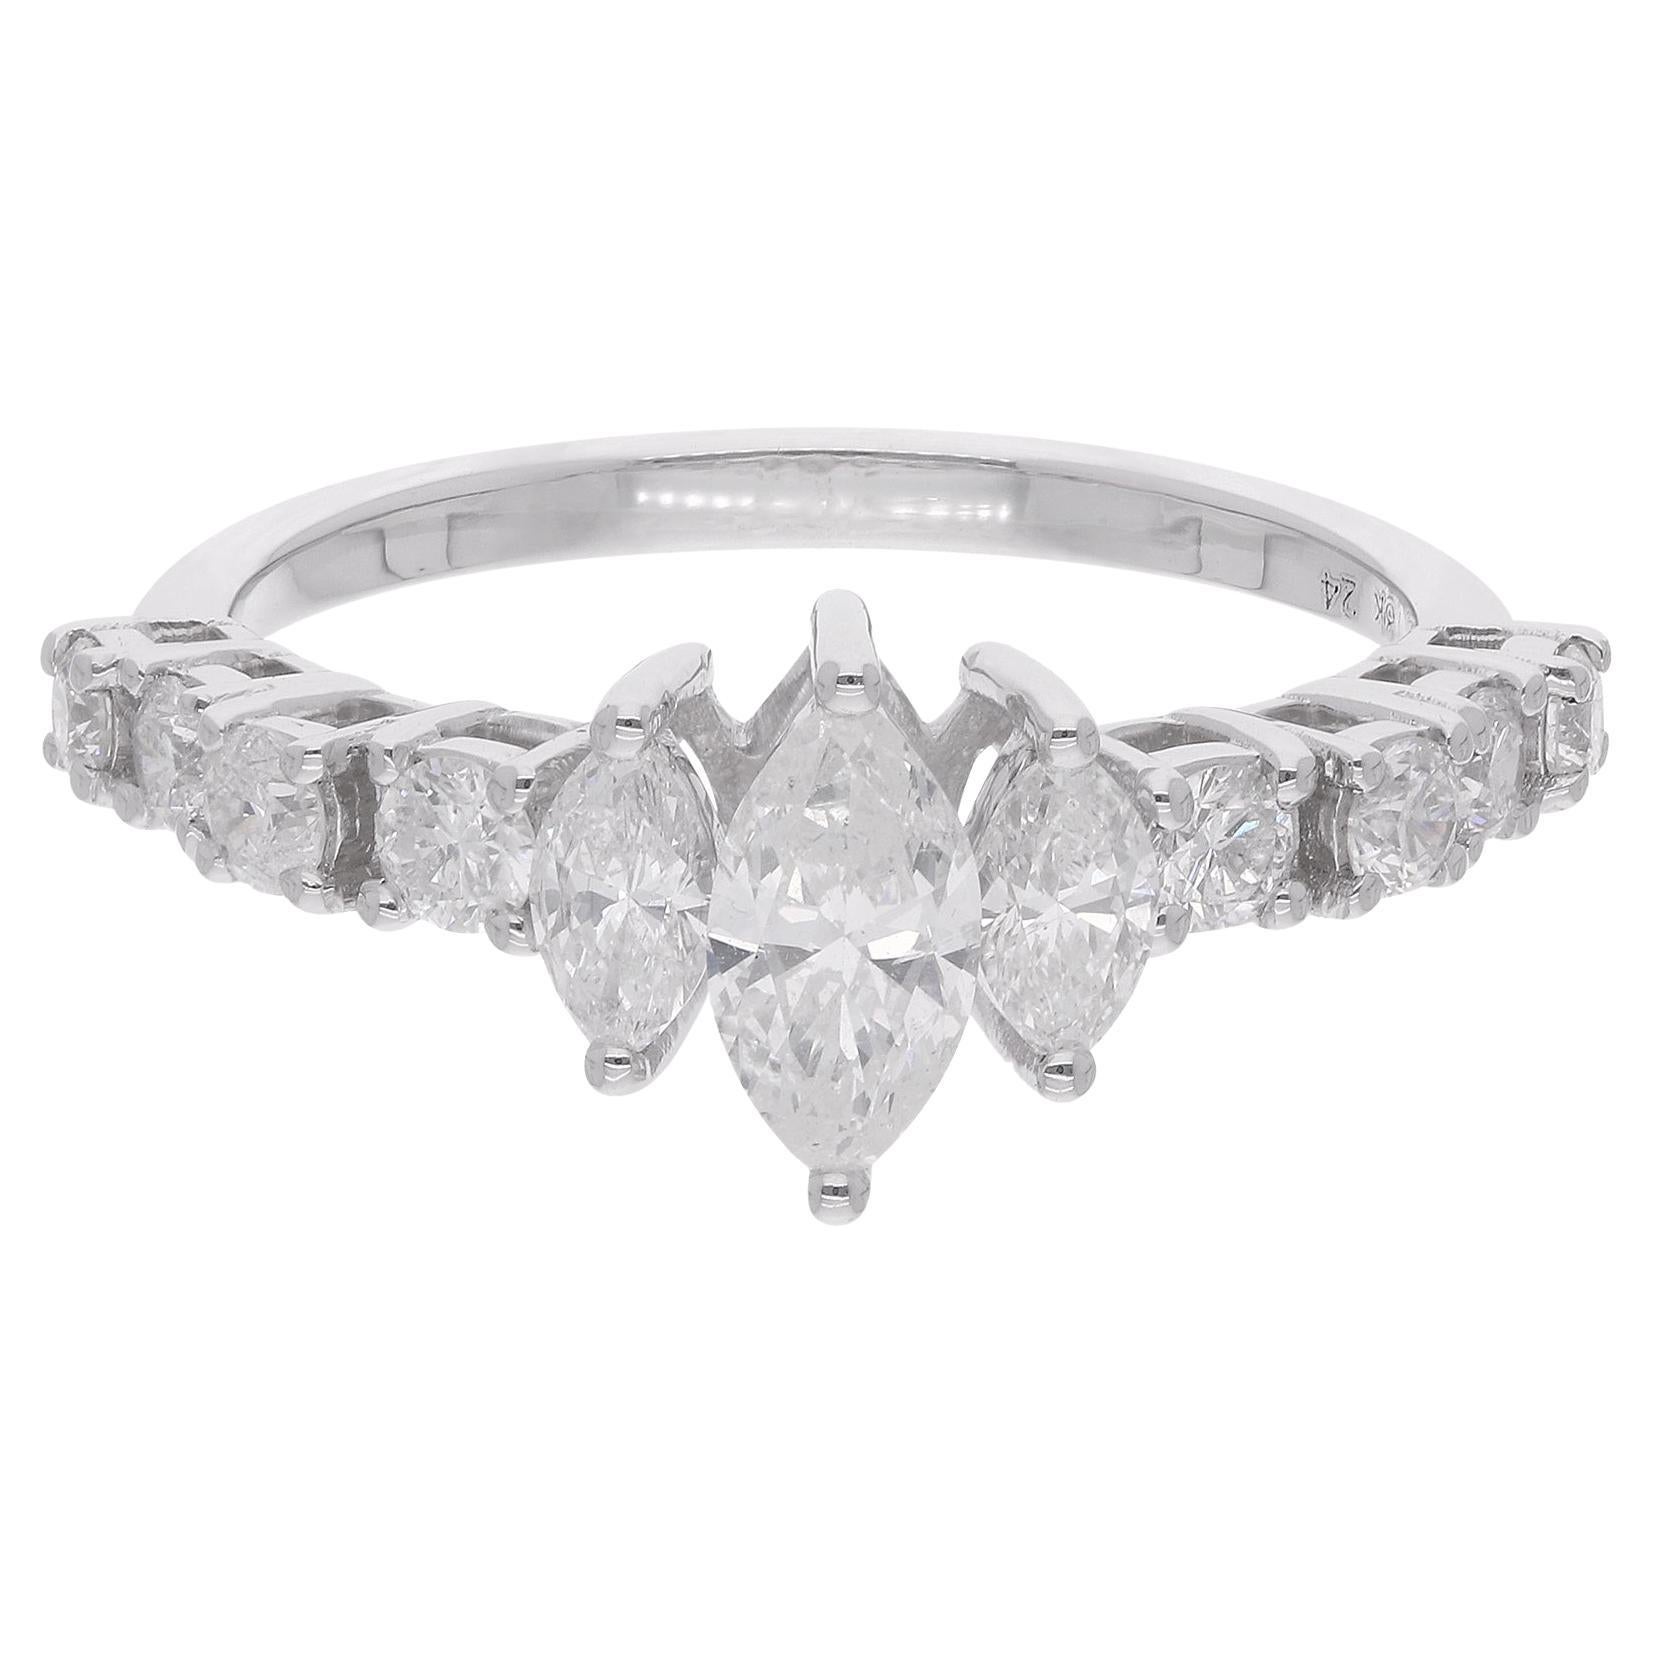 1.02 Carat Marquise & Round Diamond Ring 18 Karat White Gold Handmade Jewelry